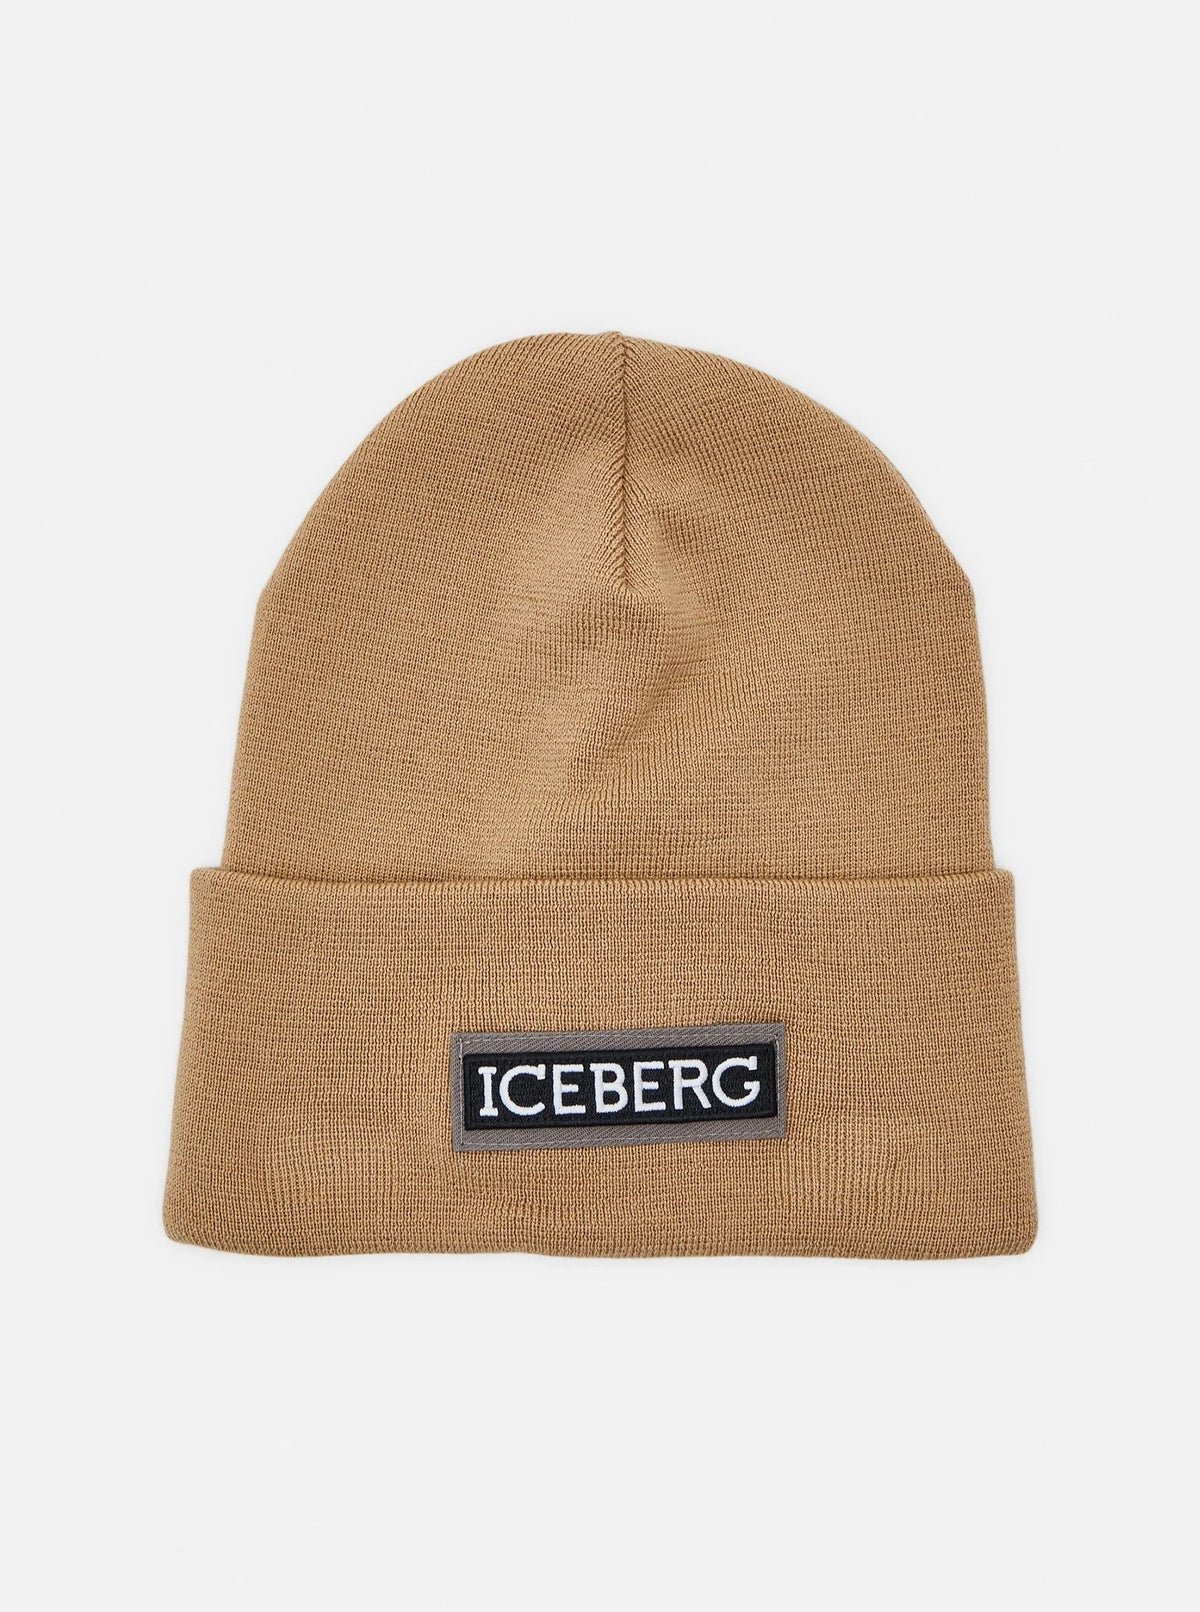 Iceberg Headwear Nocciola